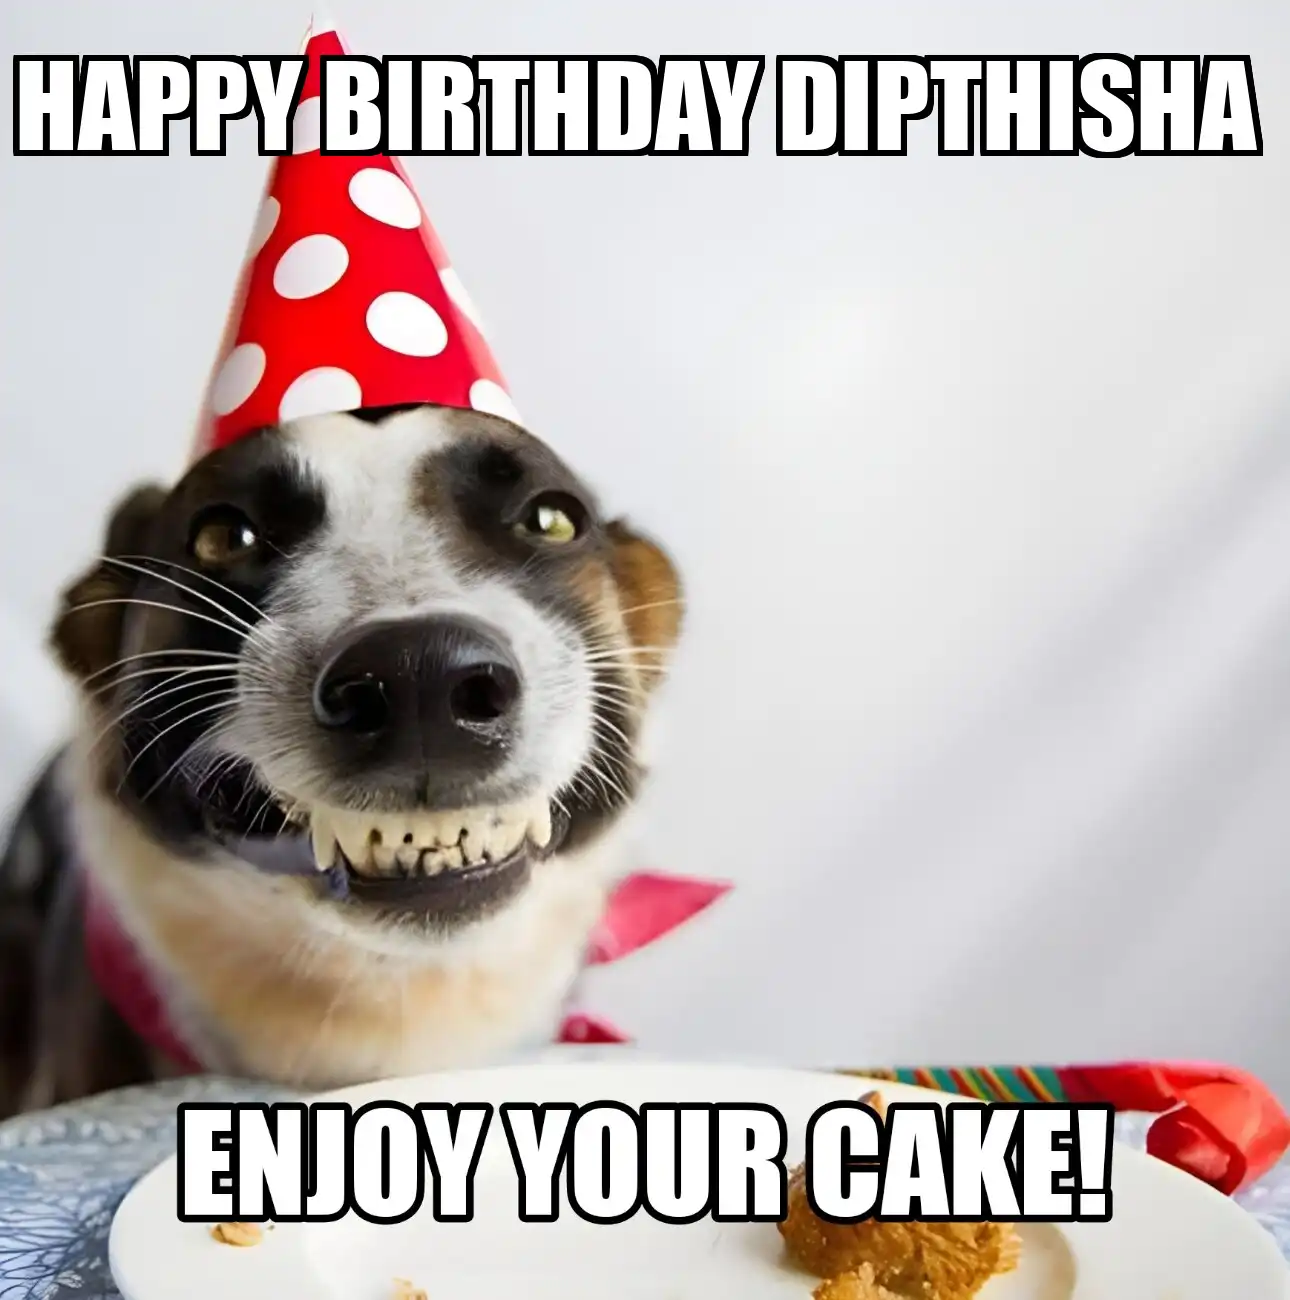 Happy Birthday Dipthisha Enjoy Your Cake Dog Meme